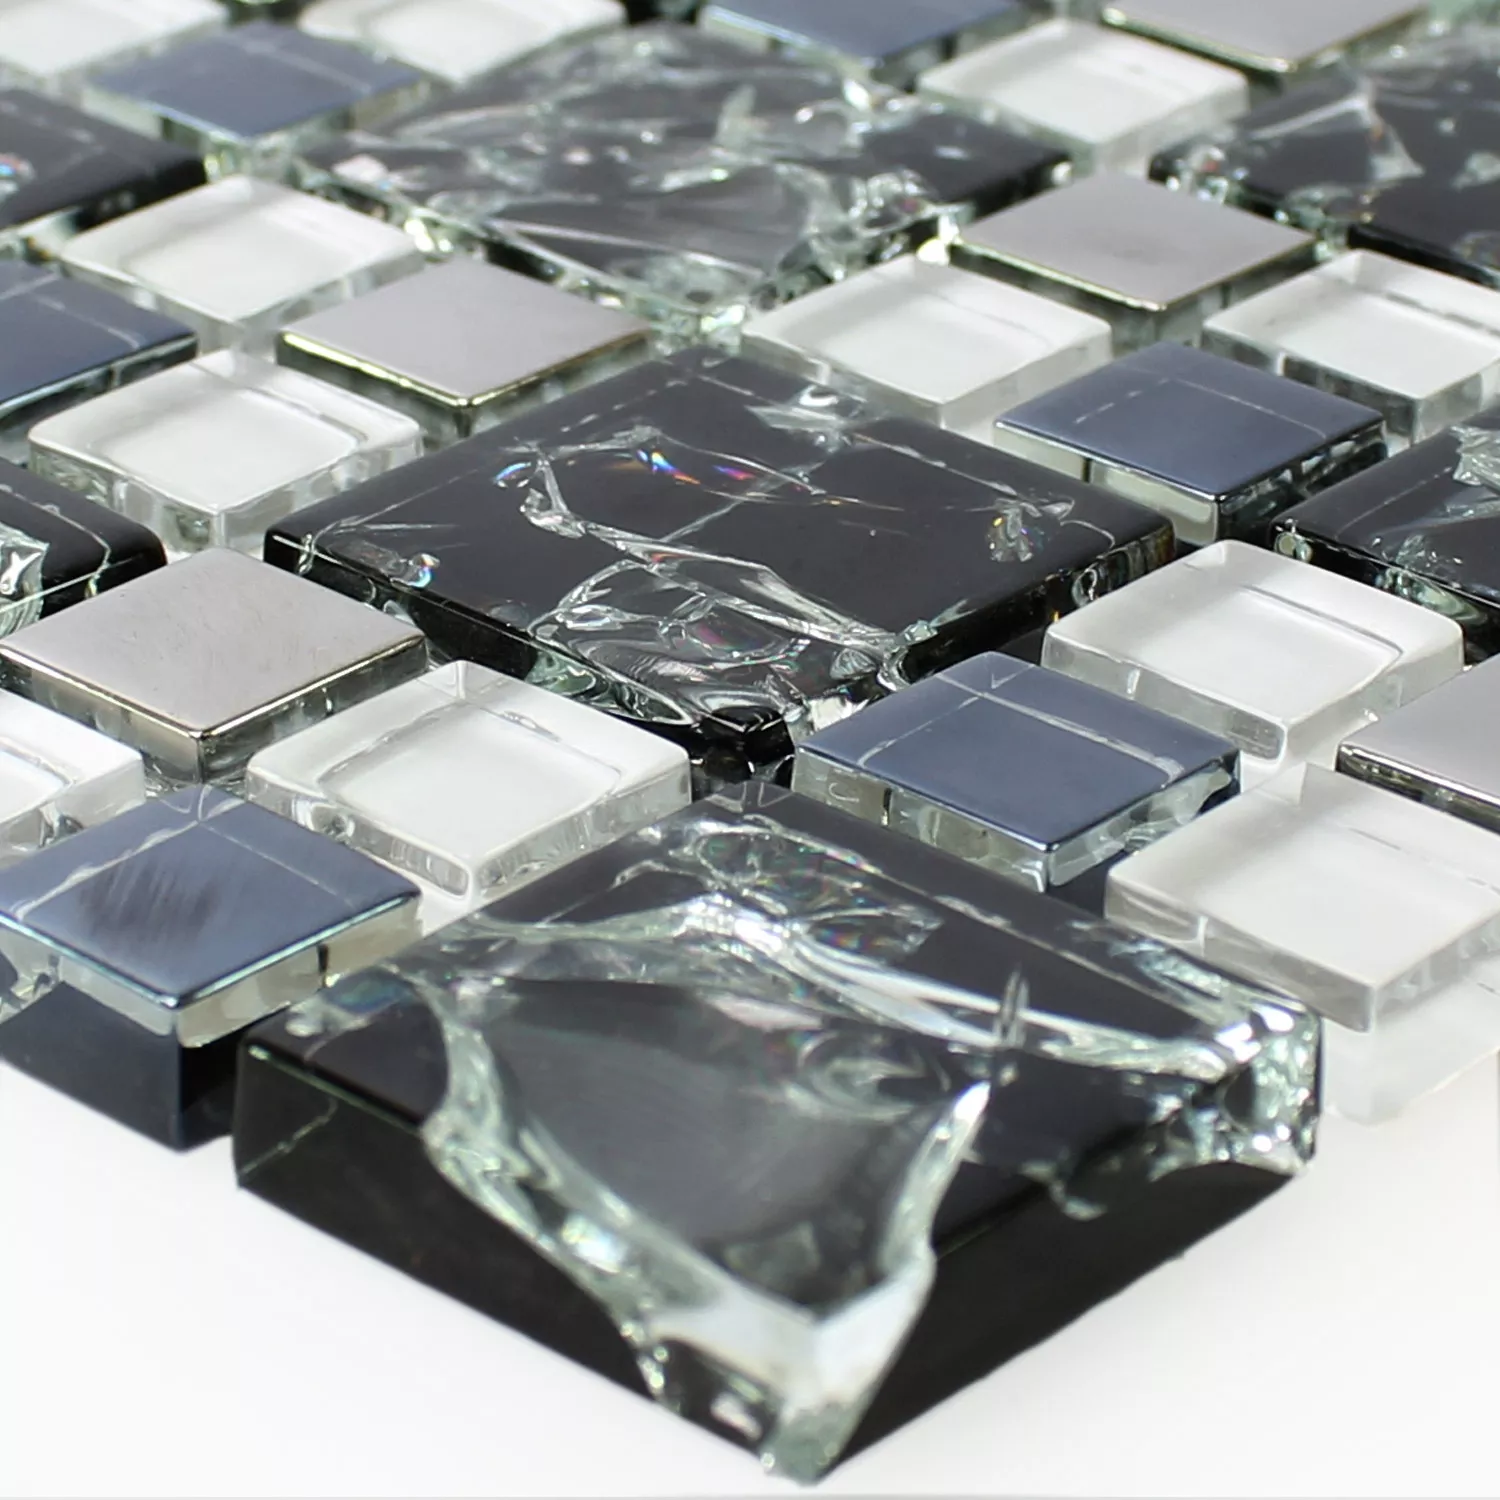 Azulejos De Mosaico Cristal Acero Inoxidable Negro Plateado Roto